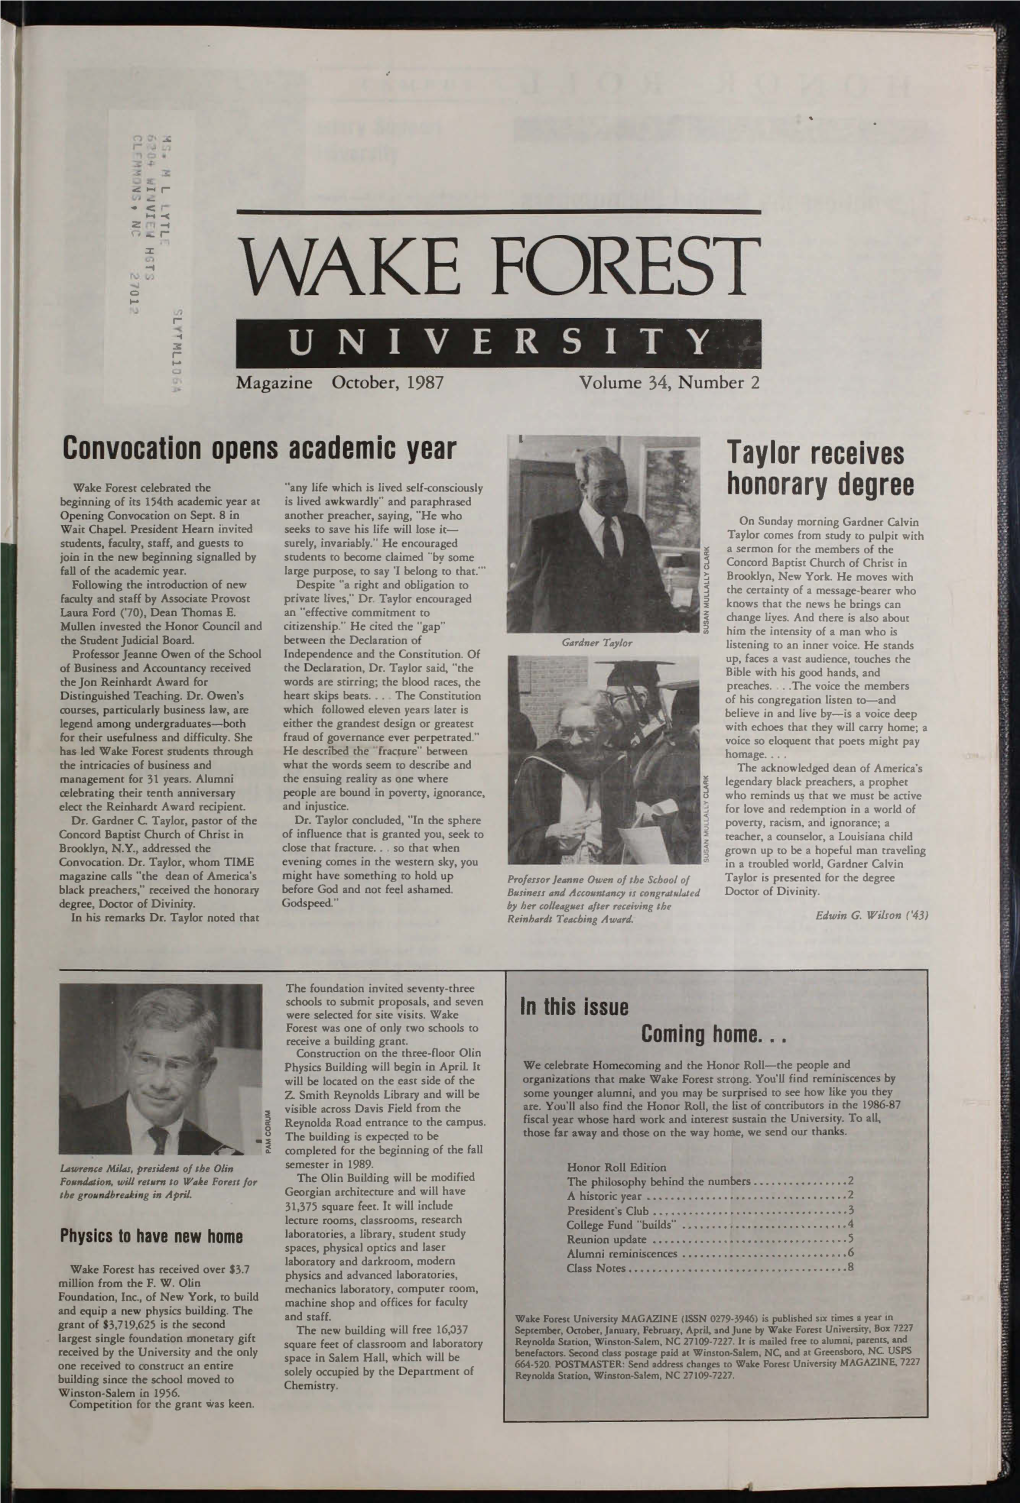 WAKE FOREST 0 R UNIVERSITY Magazi Ne October, 1987 Volume 34, Number 2